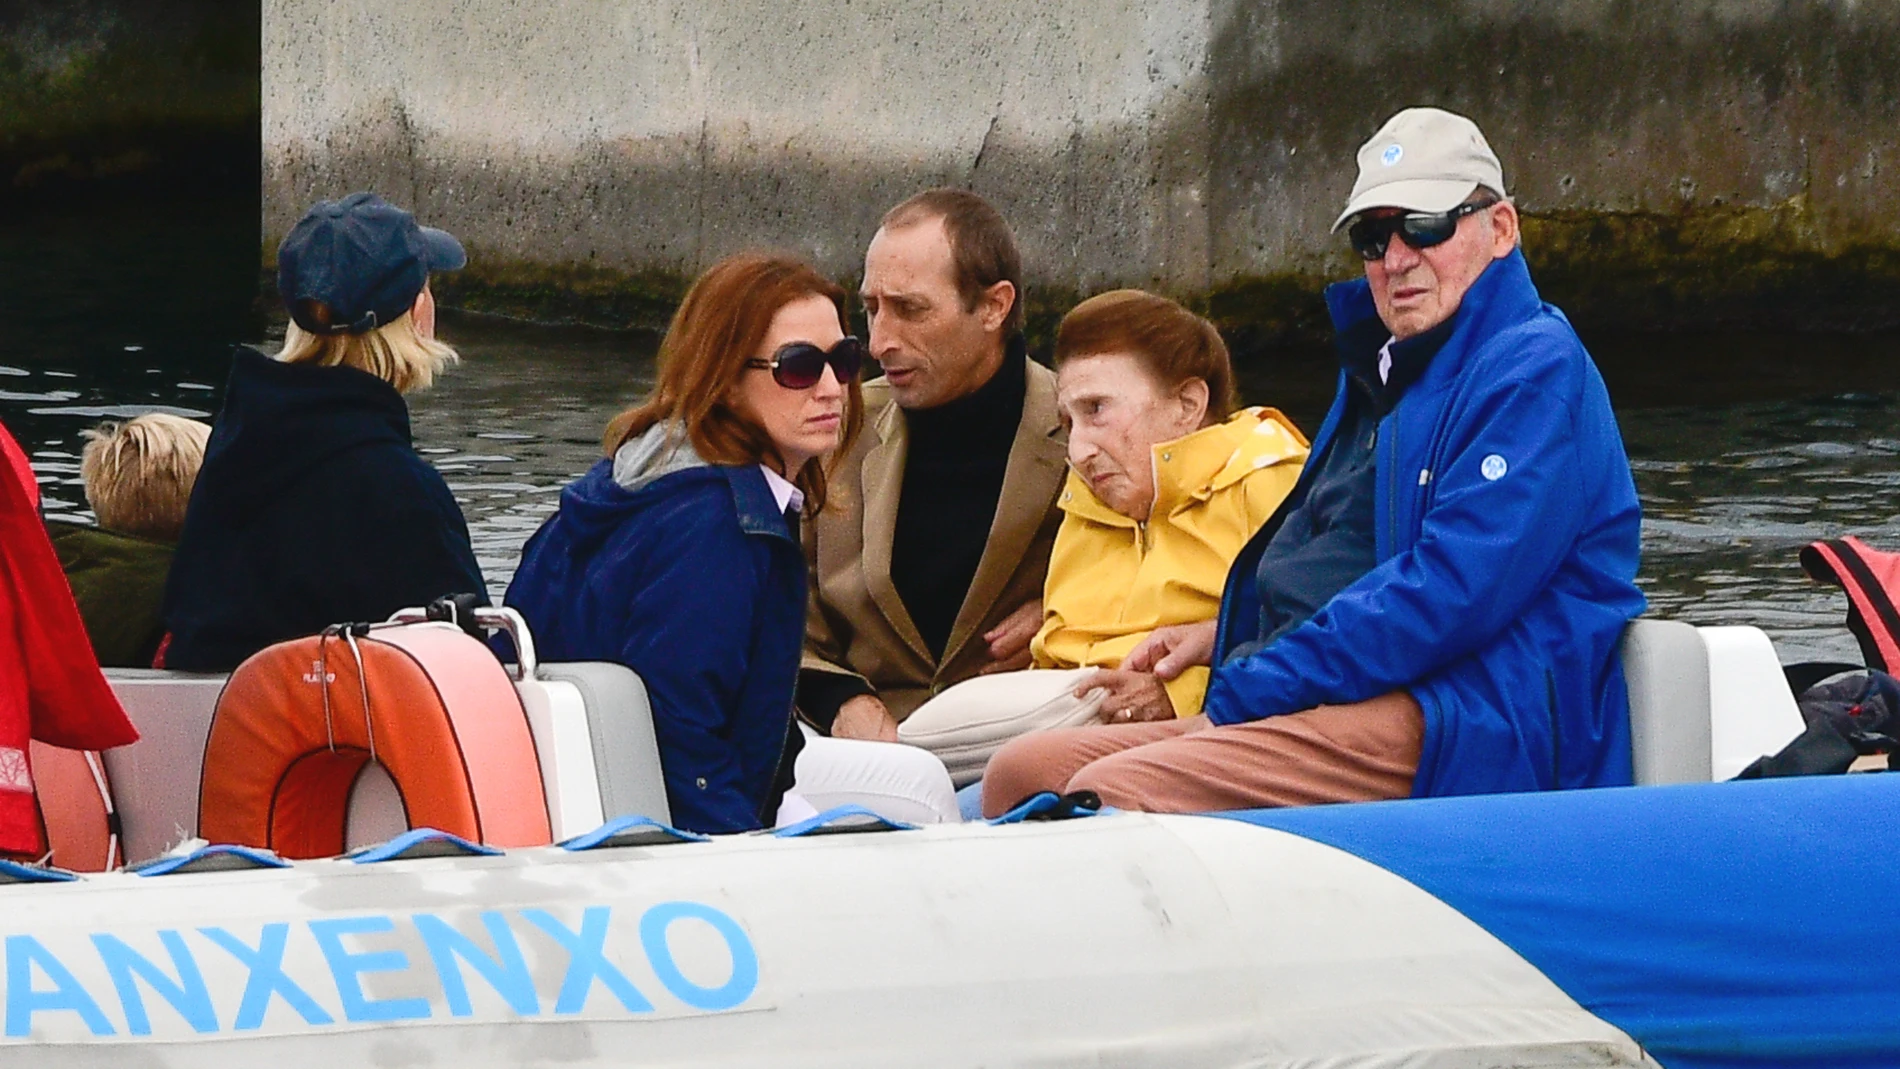 El rey Juan Carlos disfruta de un día en familia junto a su hermana Margarita y sus sobrinos